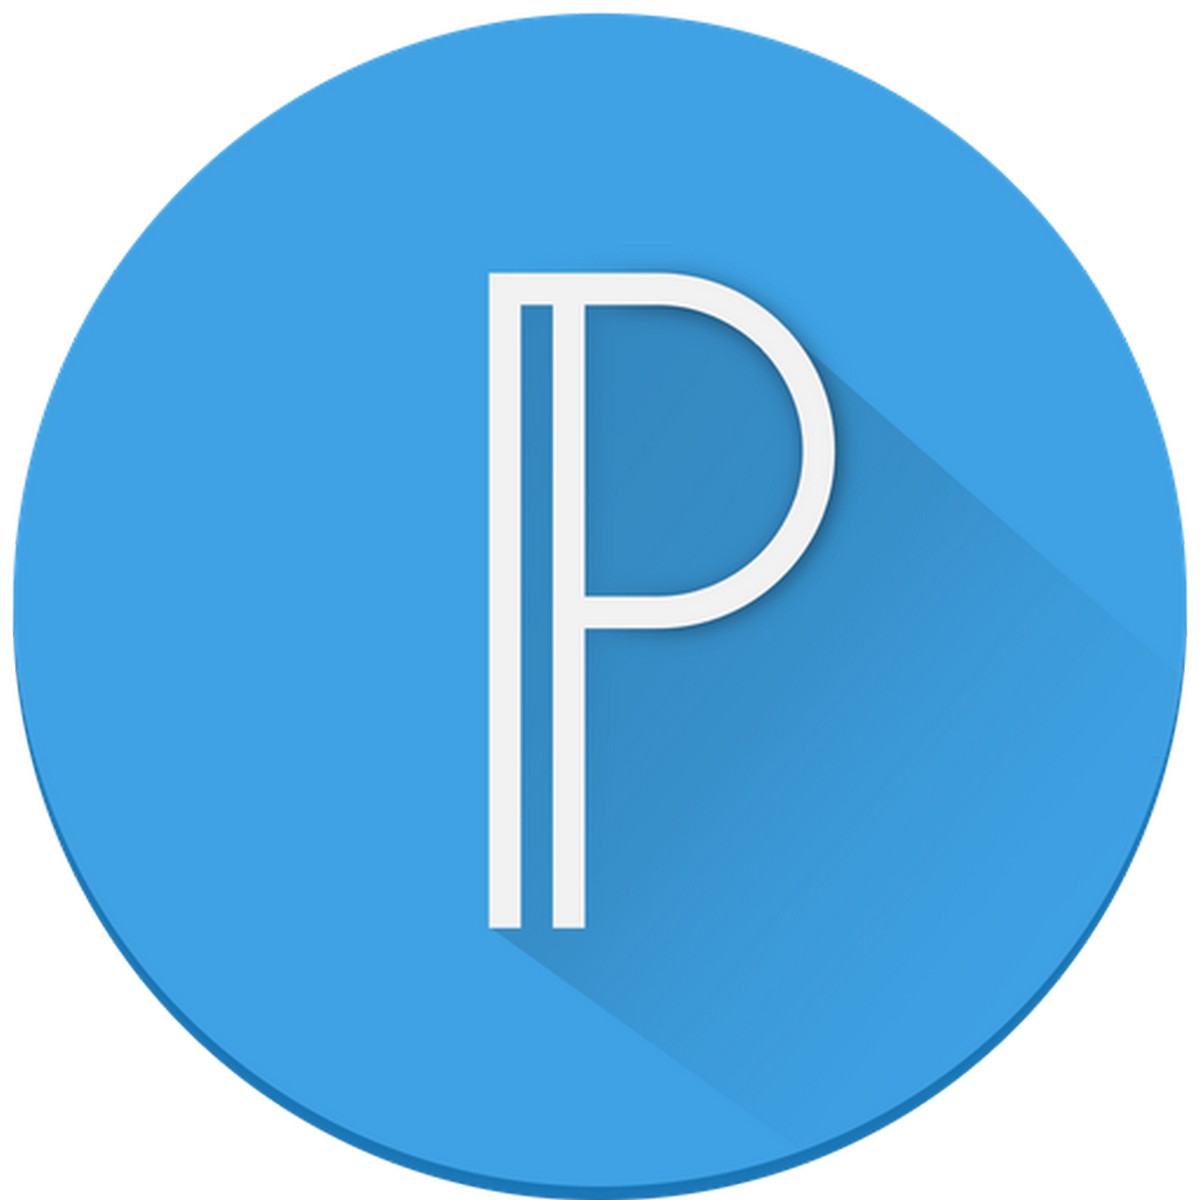 PixelLab APK MOD v1.9.9 (Premium desbloqueado)  Descargar  HACK 2021